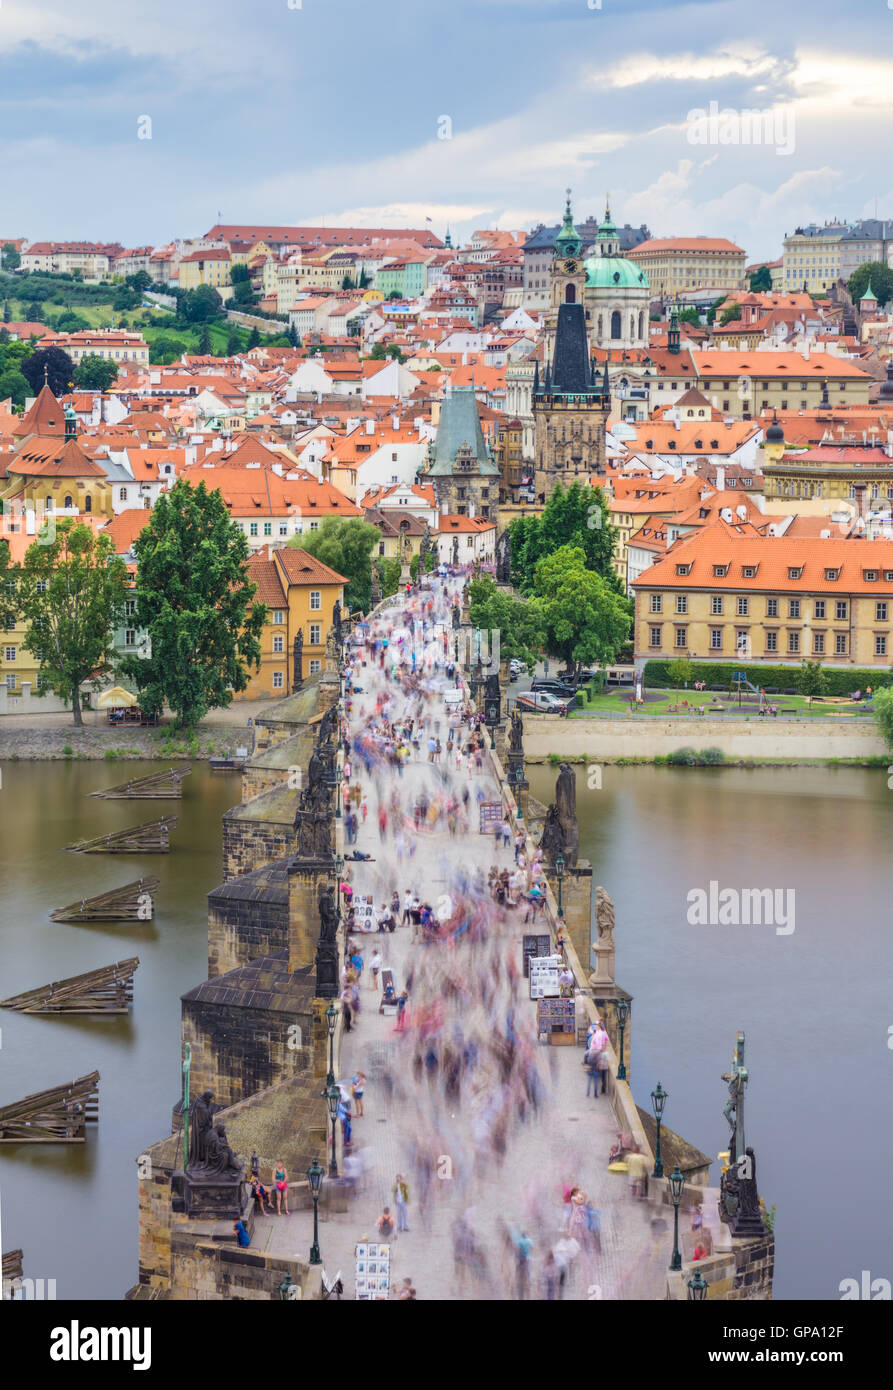 Le pont Charles est situé à Prague, République tchèque. Terminé dans le XV siècle, il traverse la rivière Vltava, menant le ca Banque D'Images